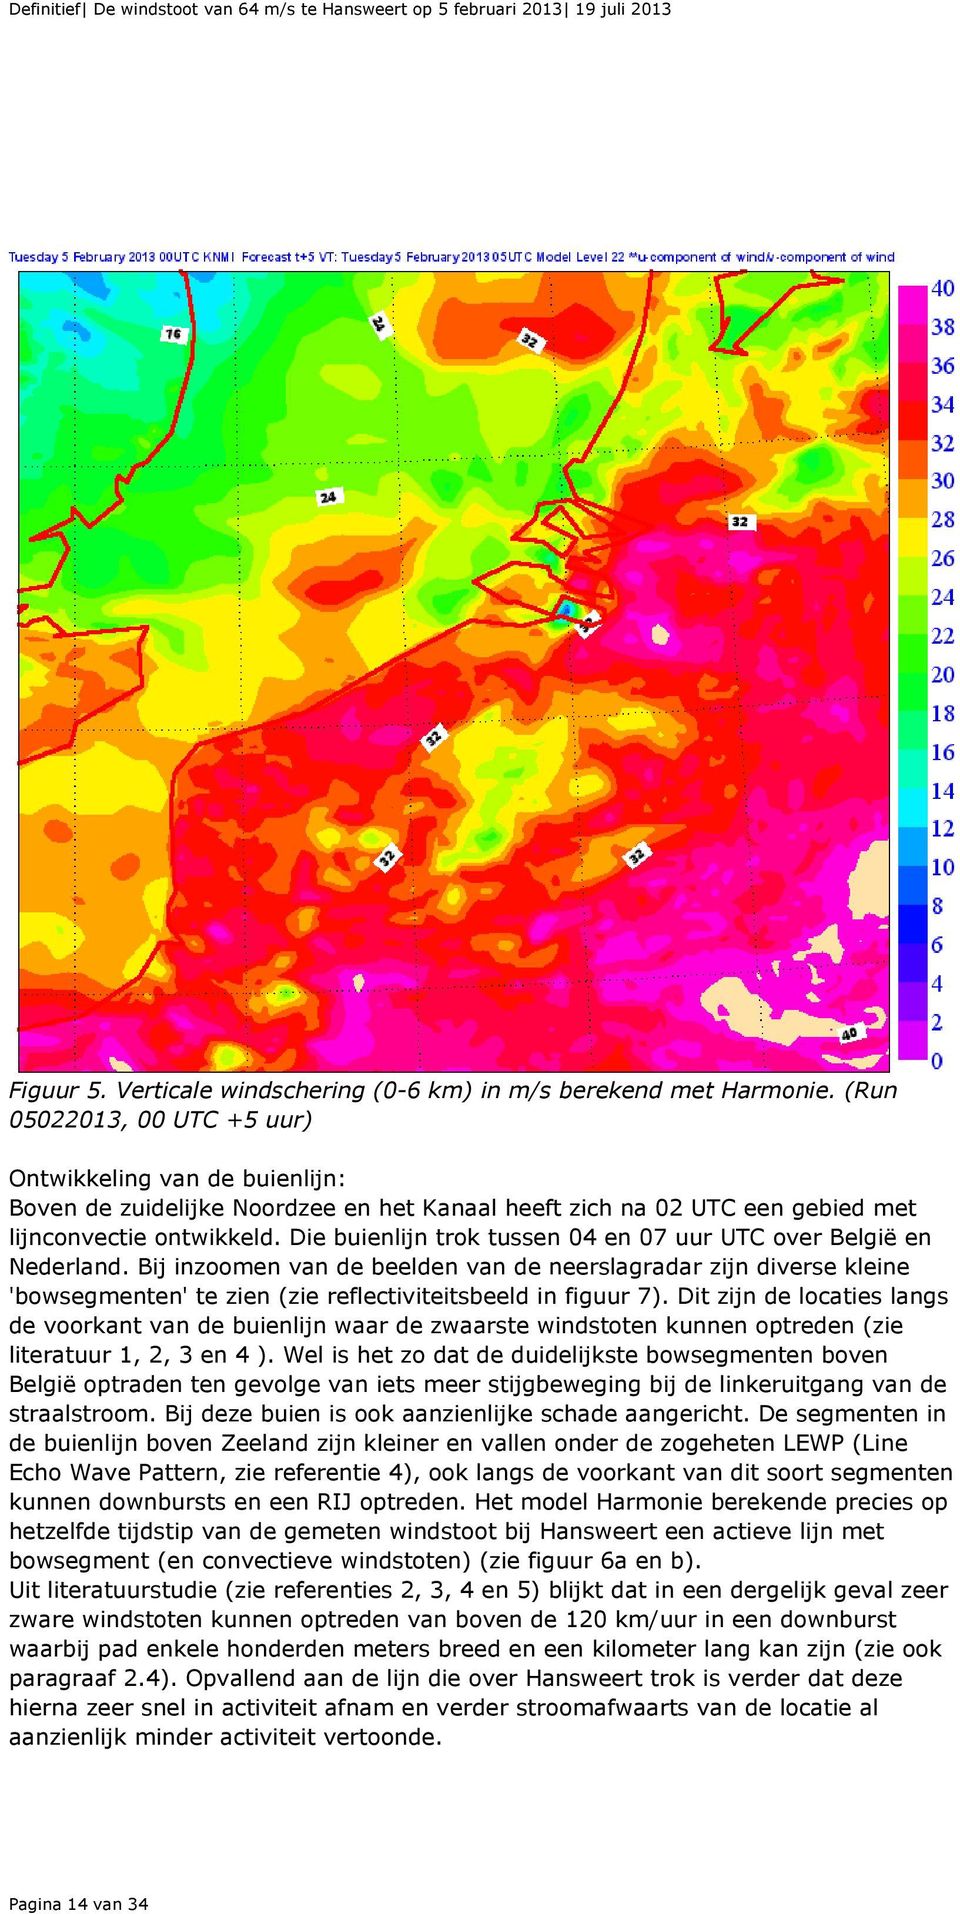 Die buienlijn trok tussen 04 en 07 uur UTC over België en Nederland. Bij inzoomen van de beelden van de neerslagradar zijn diverse kleine 'bowsegmenten' te zien (zie reflectiviteitsbeeld in figuur 7).